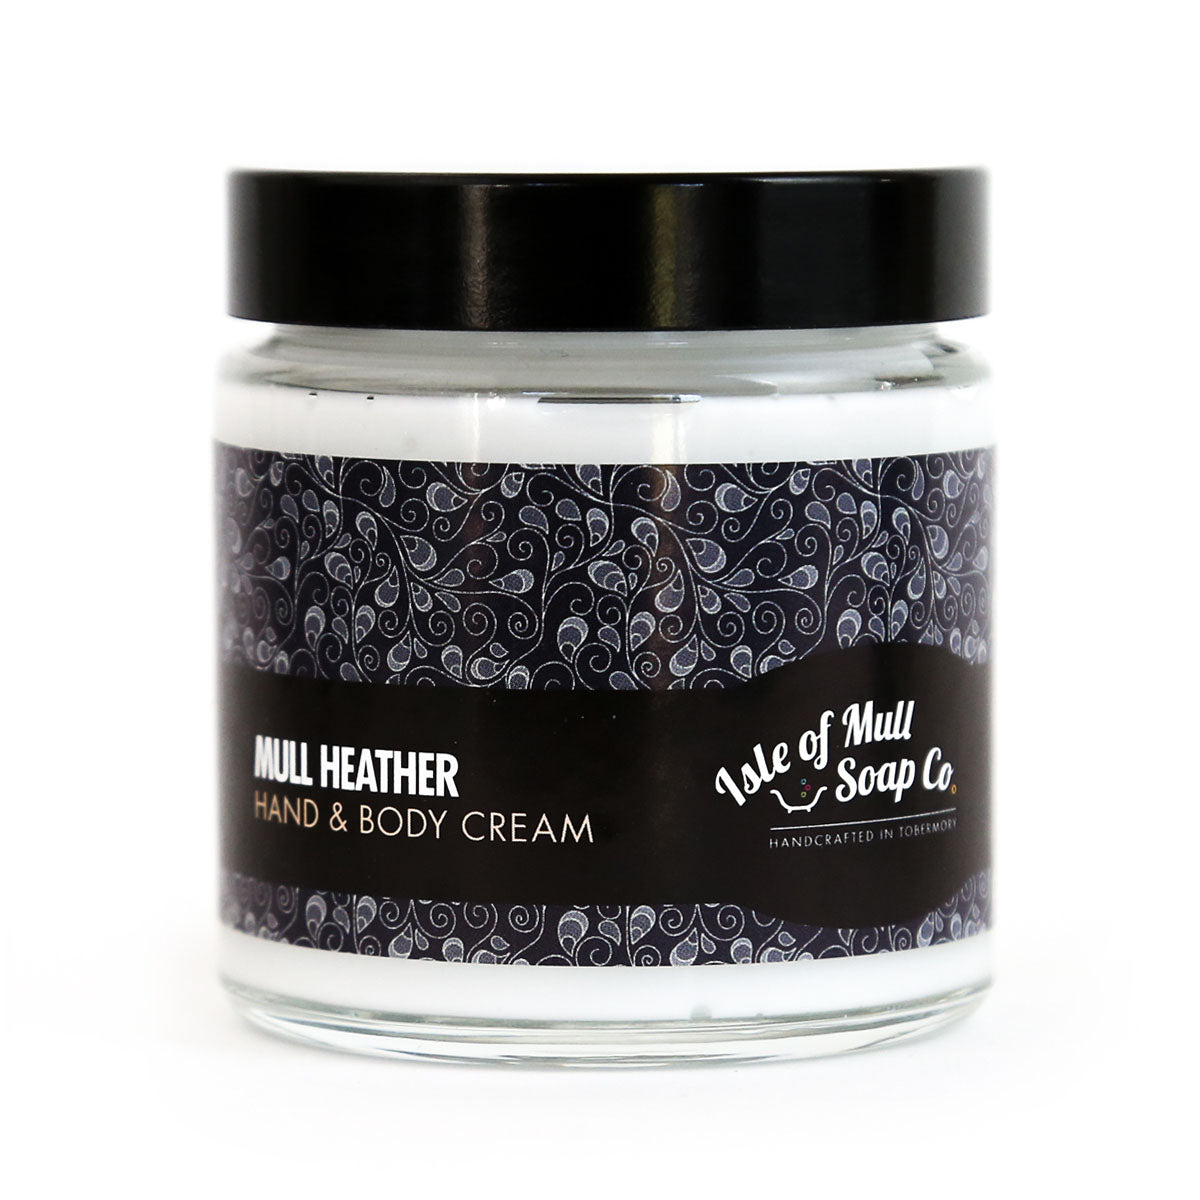 Mull Heather Isle of Mull Hand & Body Cream